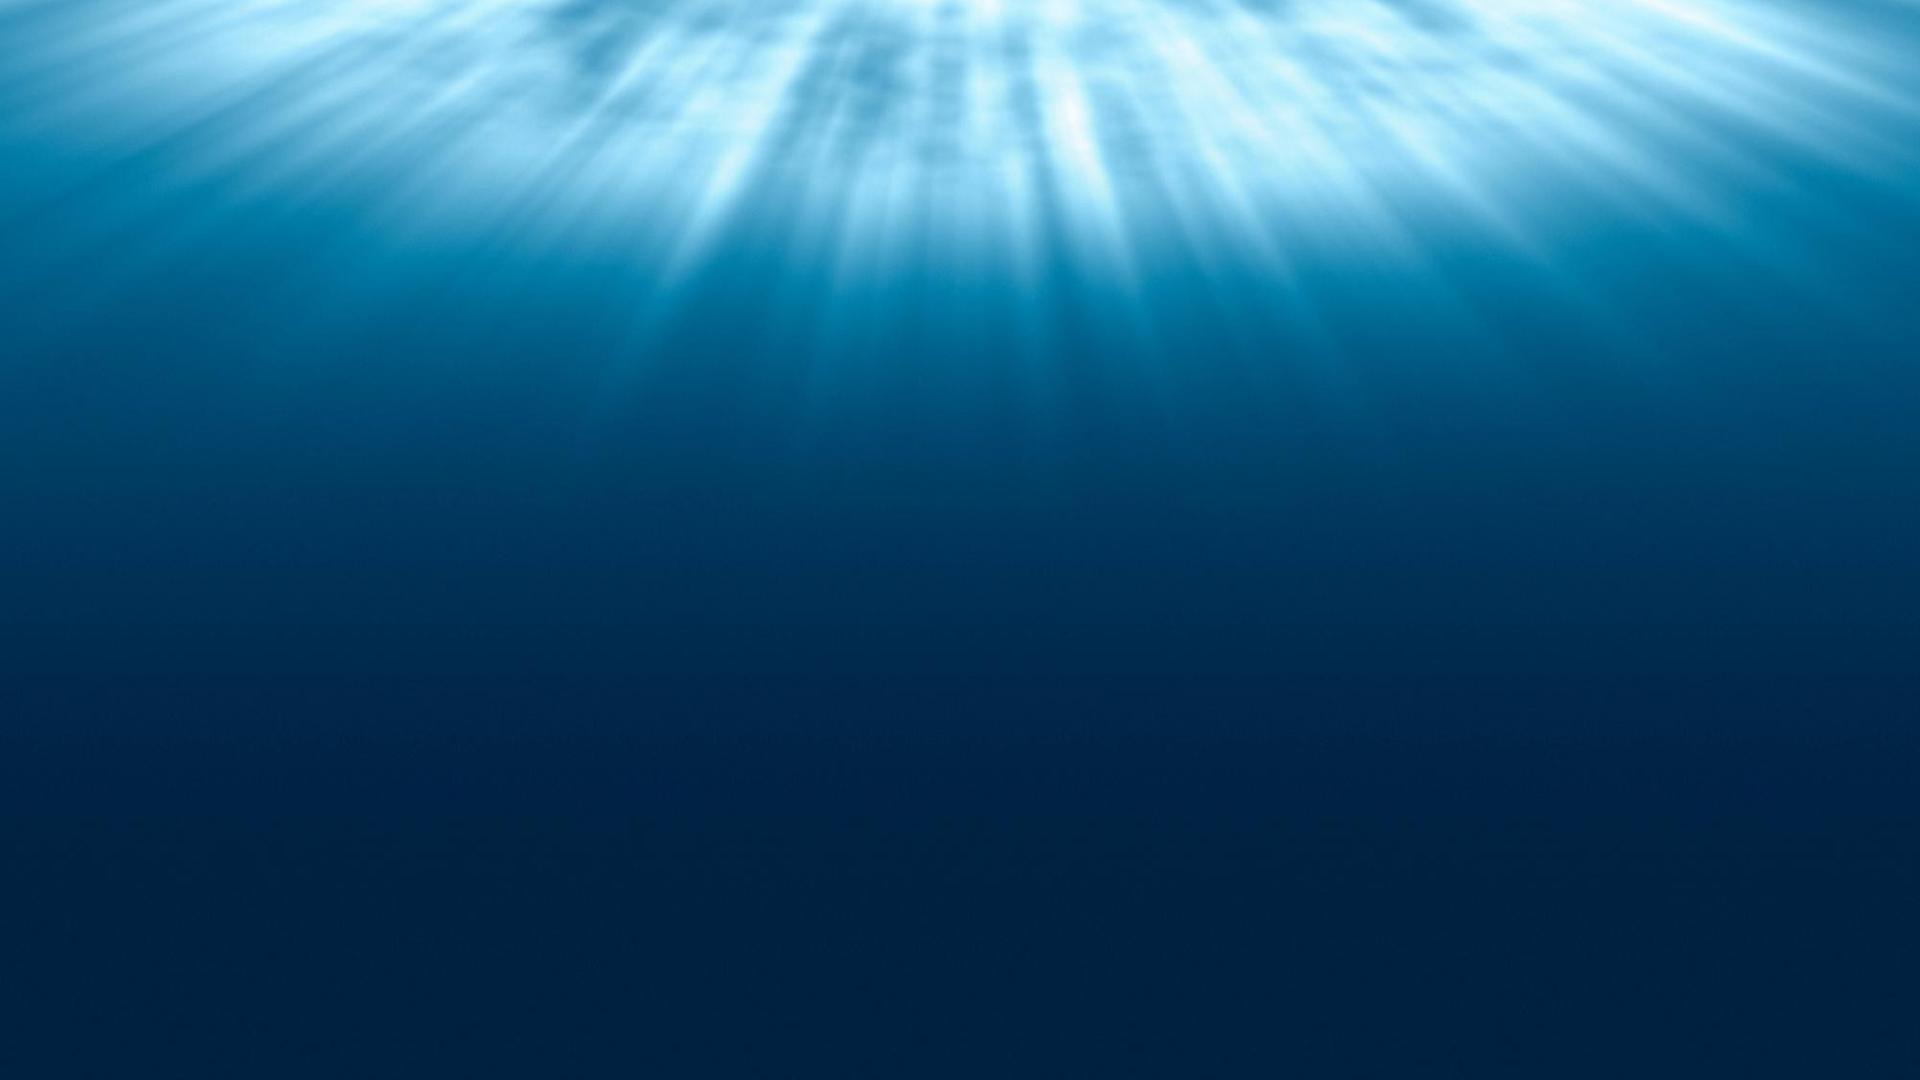 Ein Blick zur Wasseroberfläche zeigt, wie sich das Licht strahlenförmig im blauen Wasser ausbreitet.